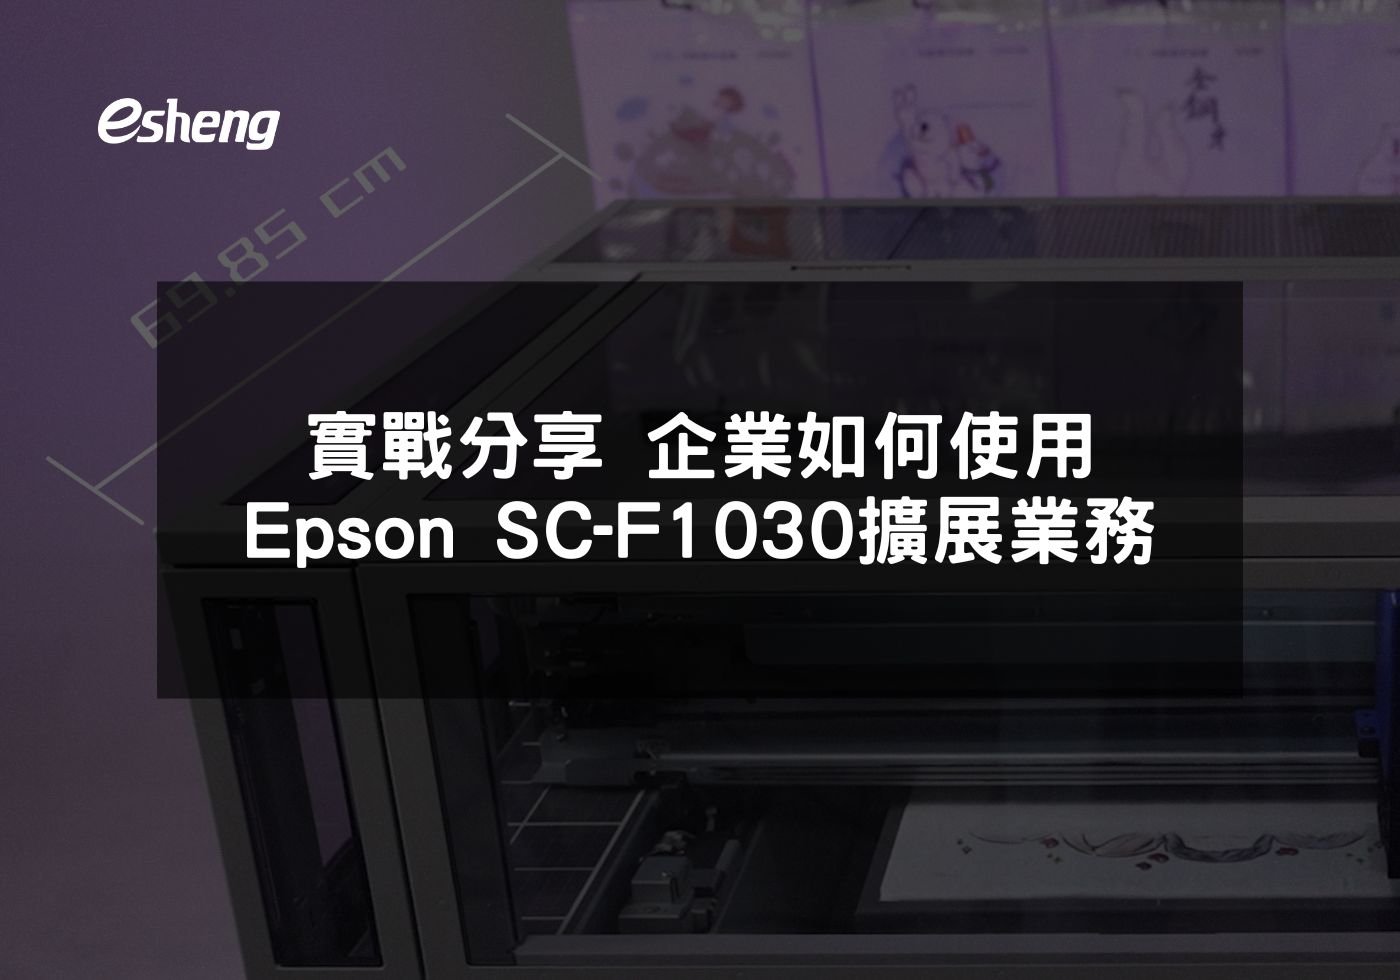 實戰分享 企業如何使用Epson SC-F1030擴展業務